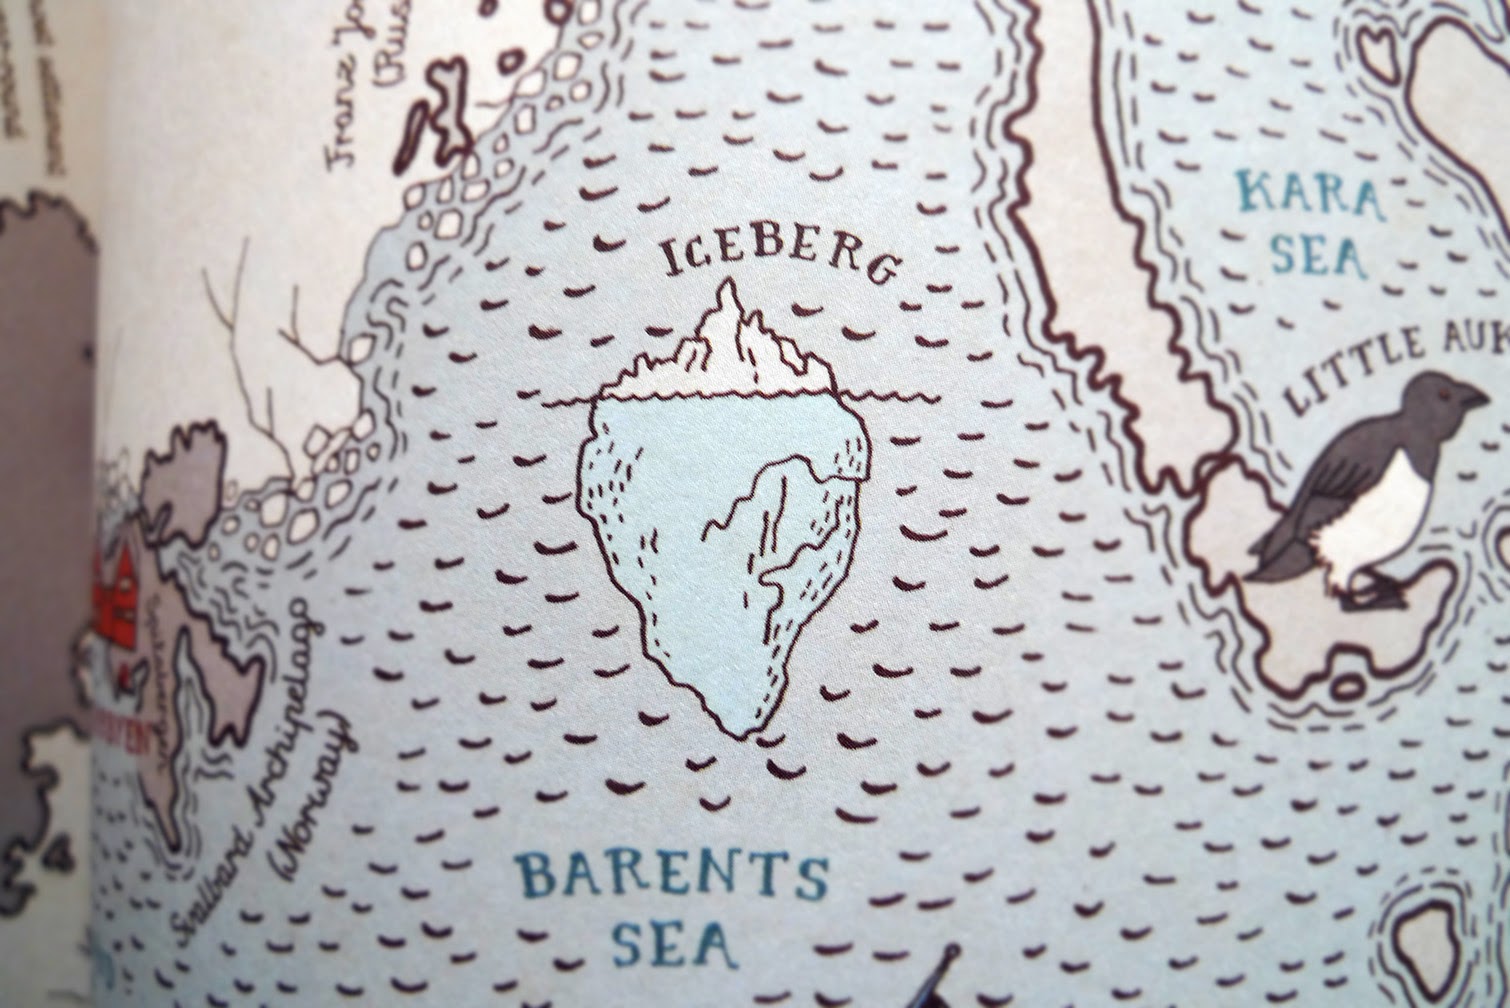 Detalle del libro MAPS, Atlas ilustrado por Aleksandra Mizielinska y Daniel Mizielinski